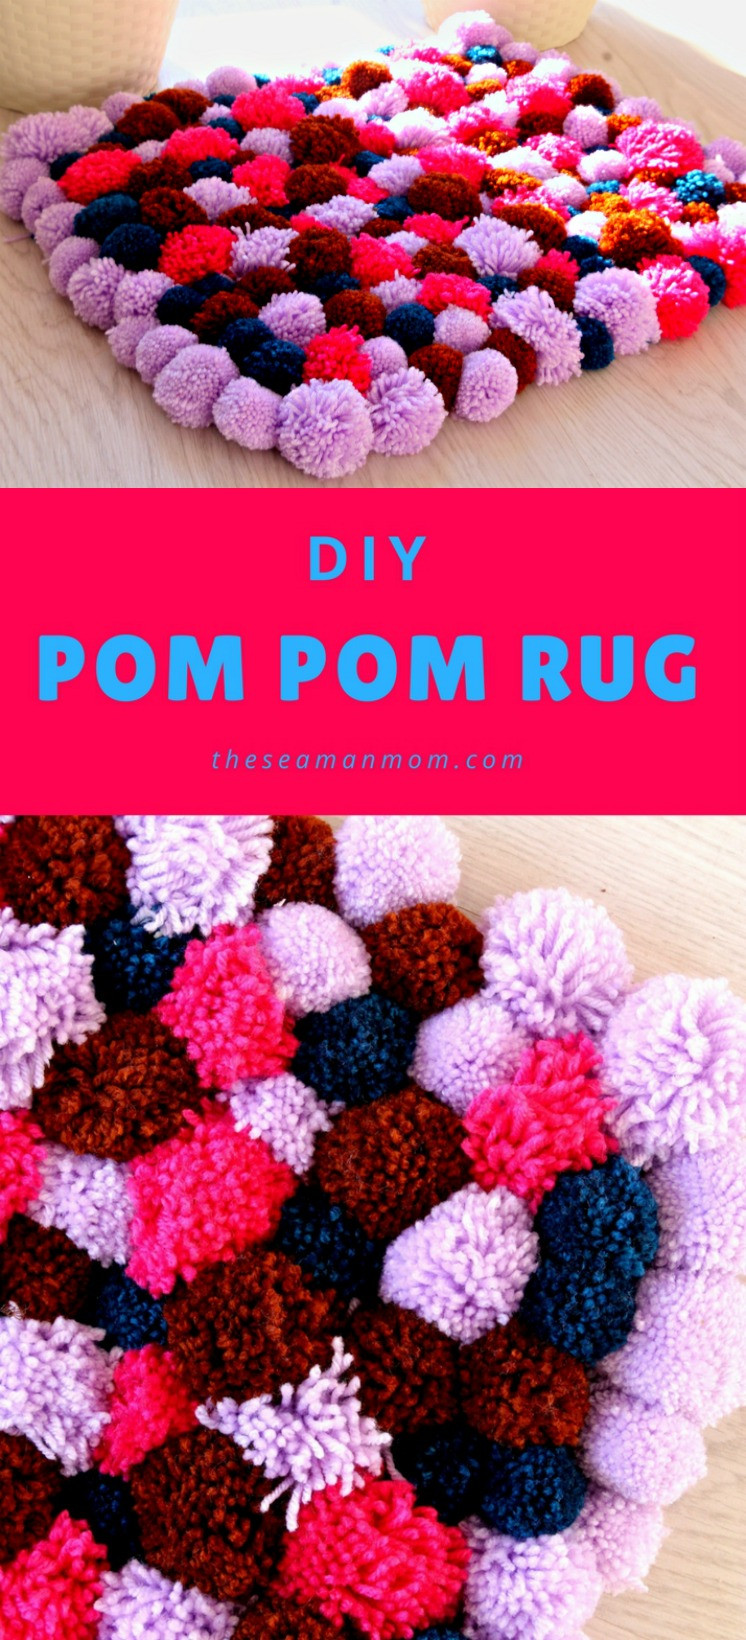 Best ideas about Pom Pom Rug DIY
. Save or Pin DIY Pom Pom Rug Now.